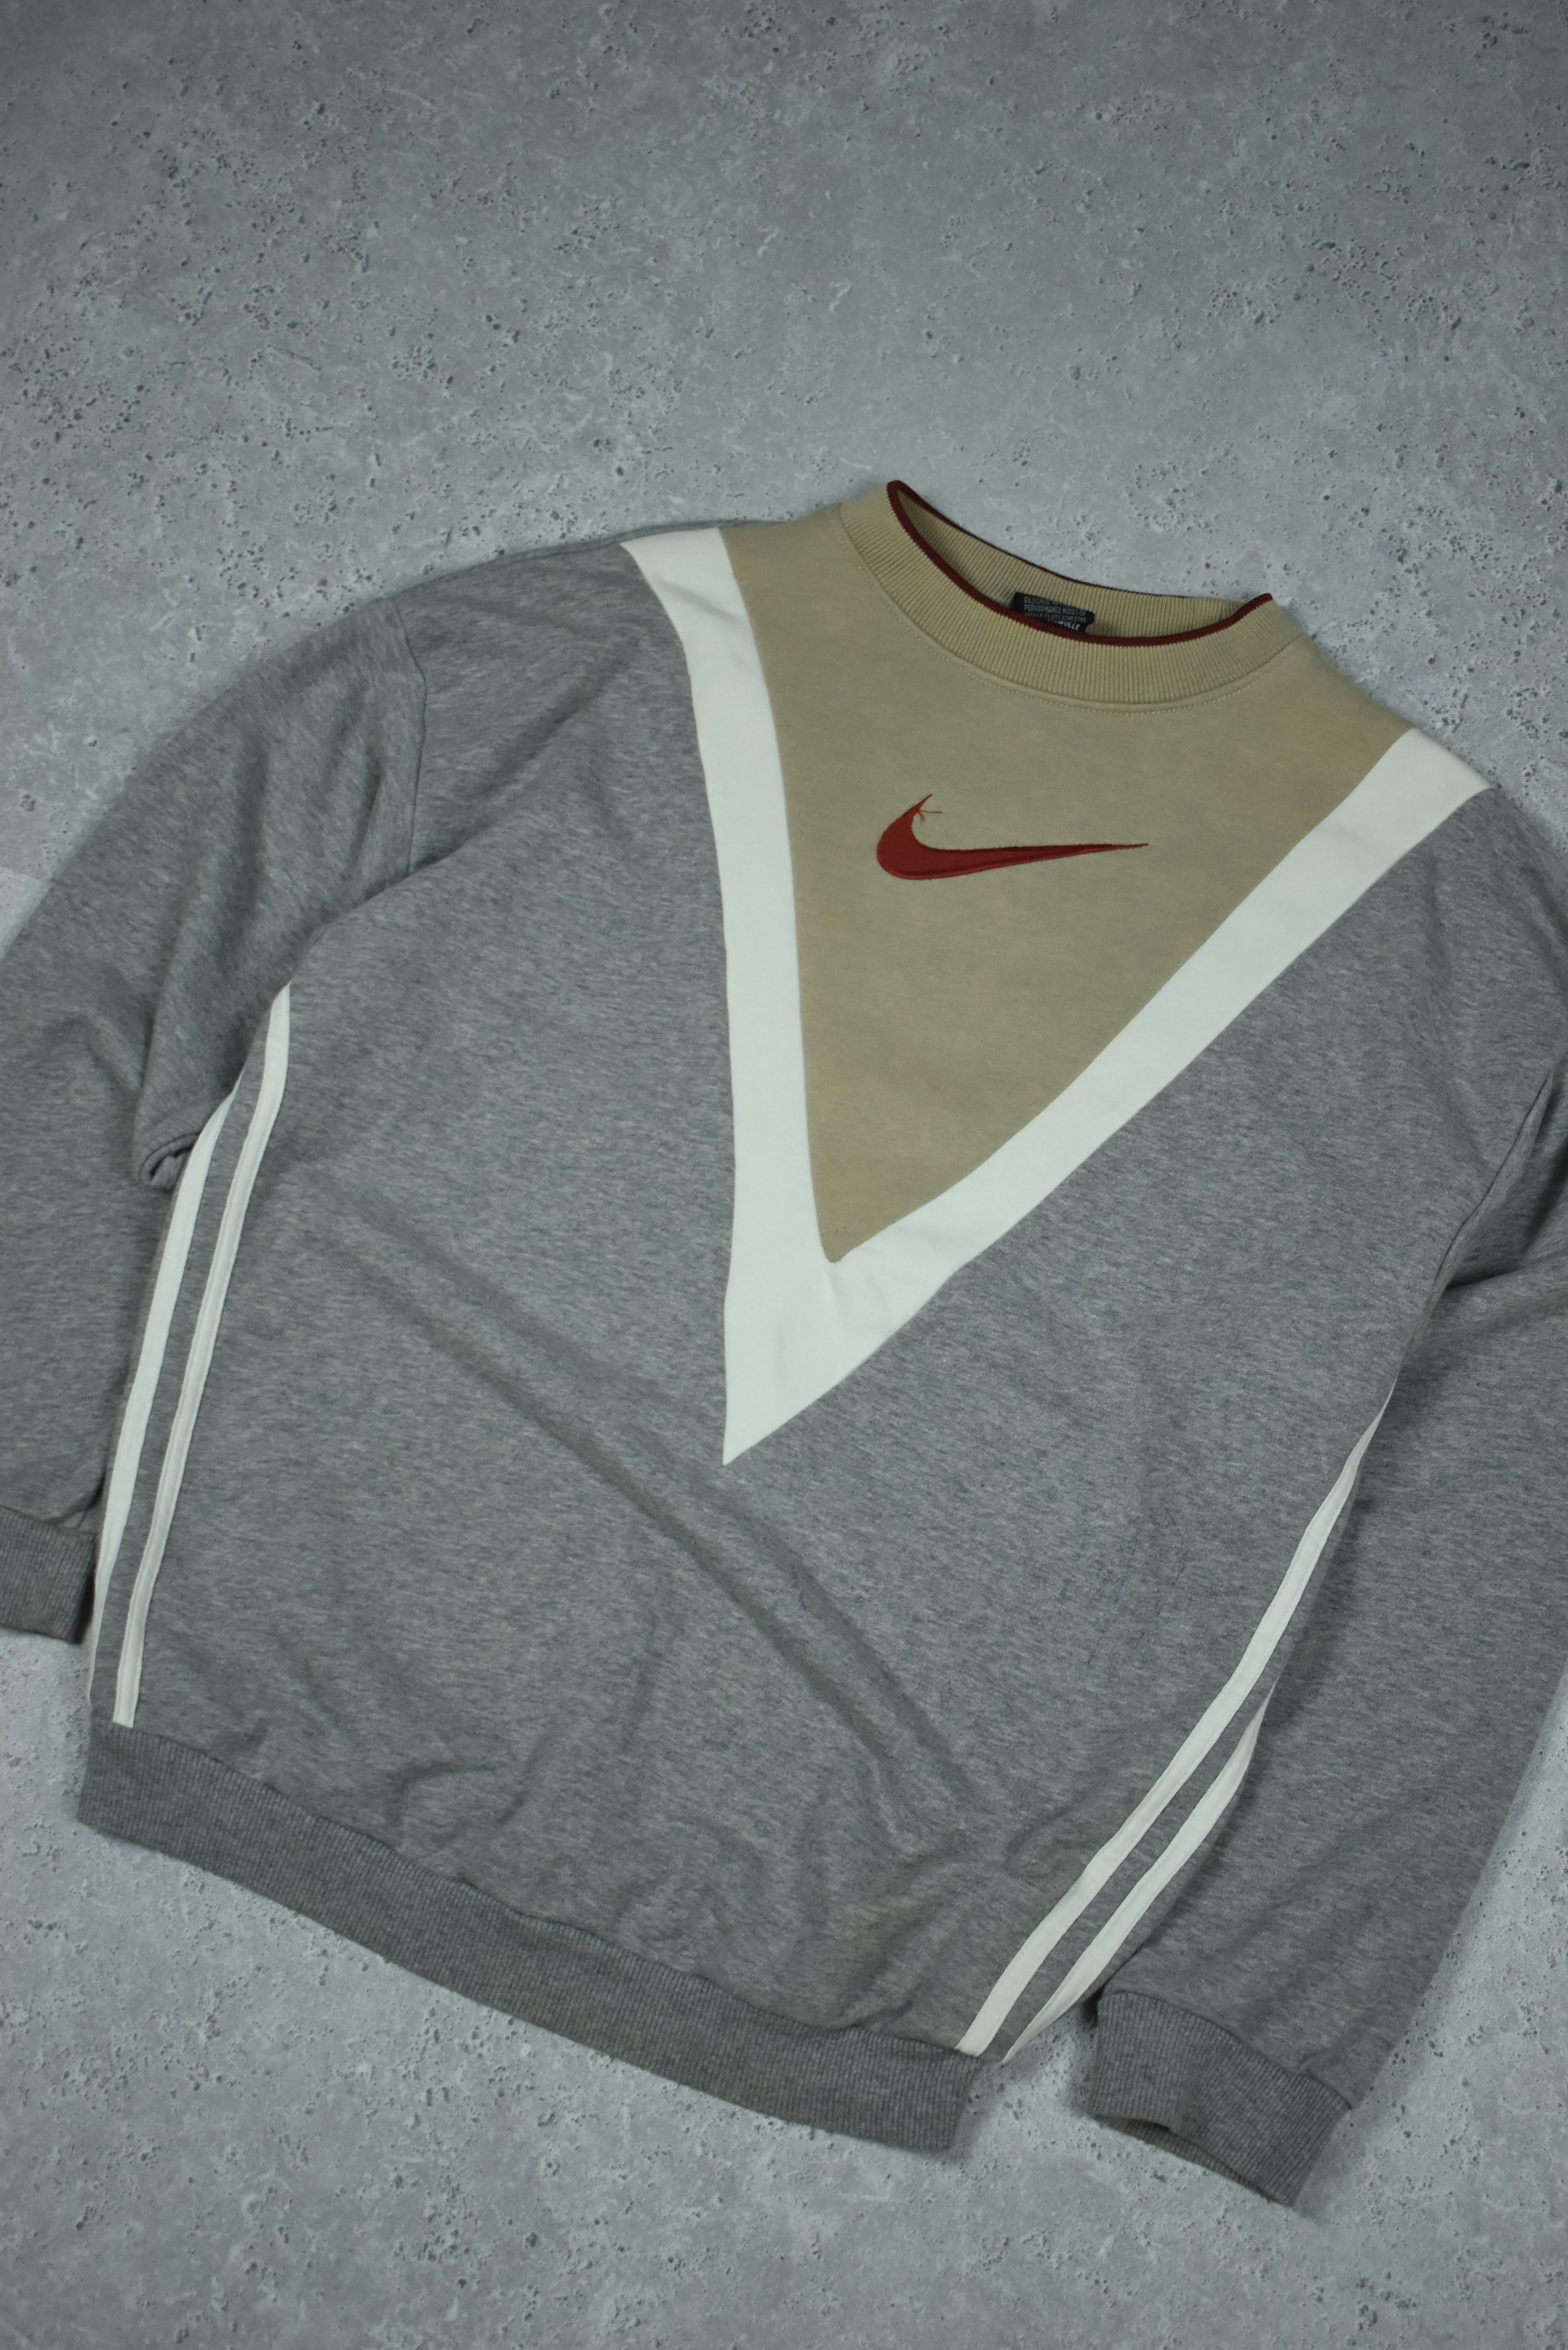 Vintage Nike Embroidered Rework Sweatshirt Medium